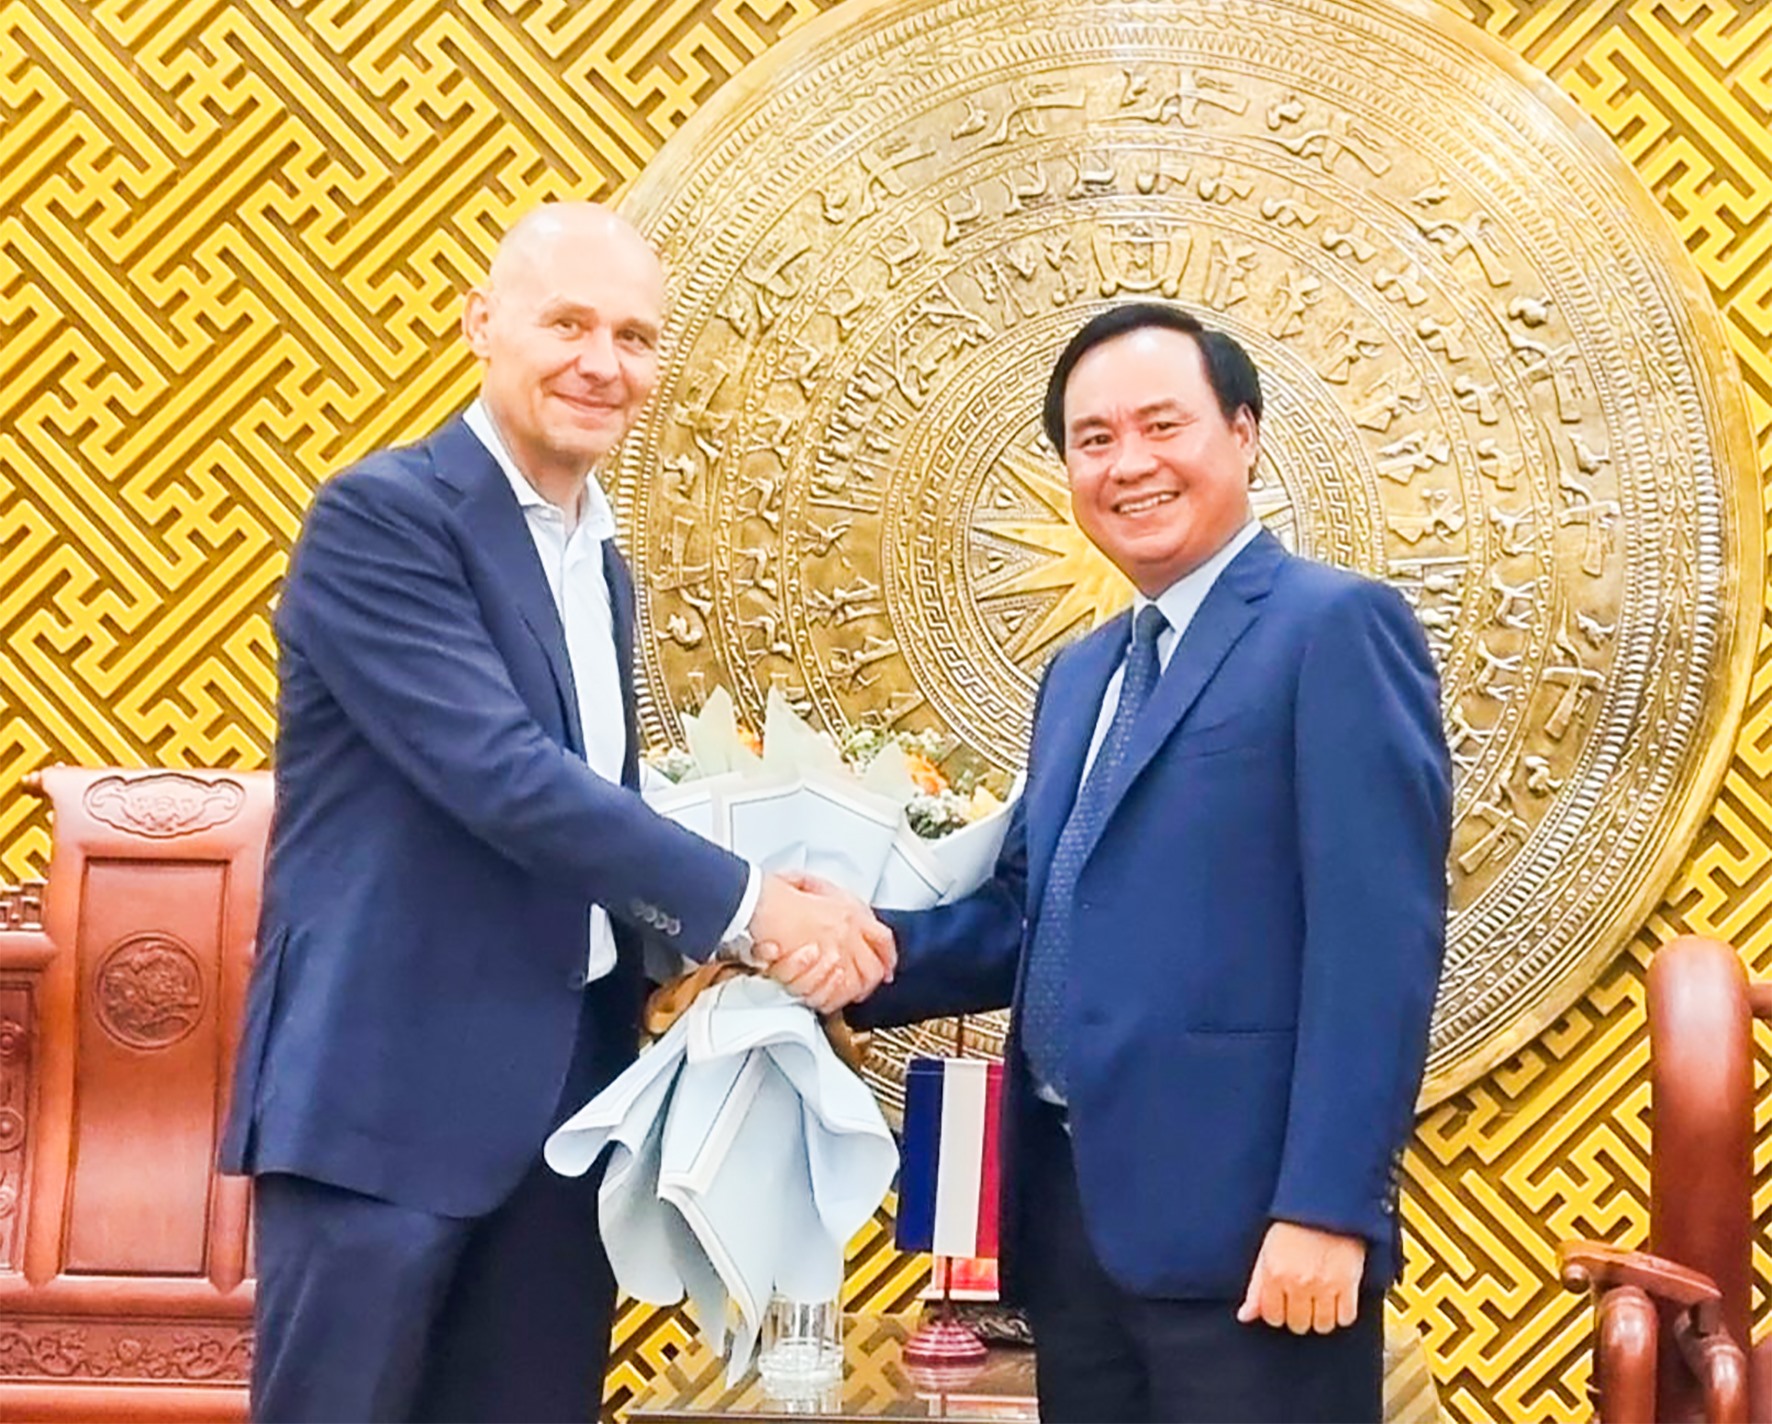 Chủ tịch UBND tỉnh Võ Văn Hưng tặng hoa cho Đại sứ Vương quốc Hà Lan tại Việt Nam Kees van Baar - Ảnh: K.S